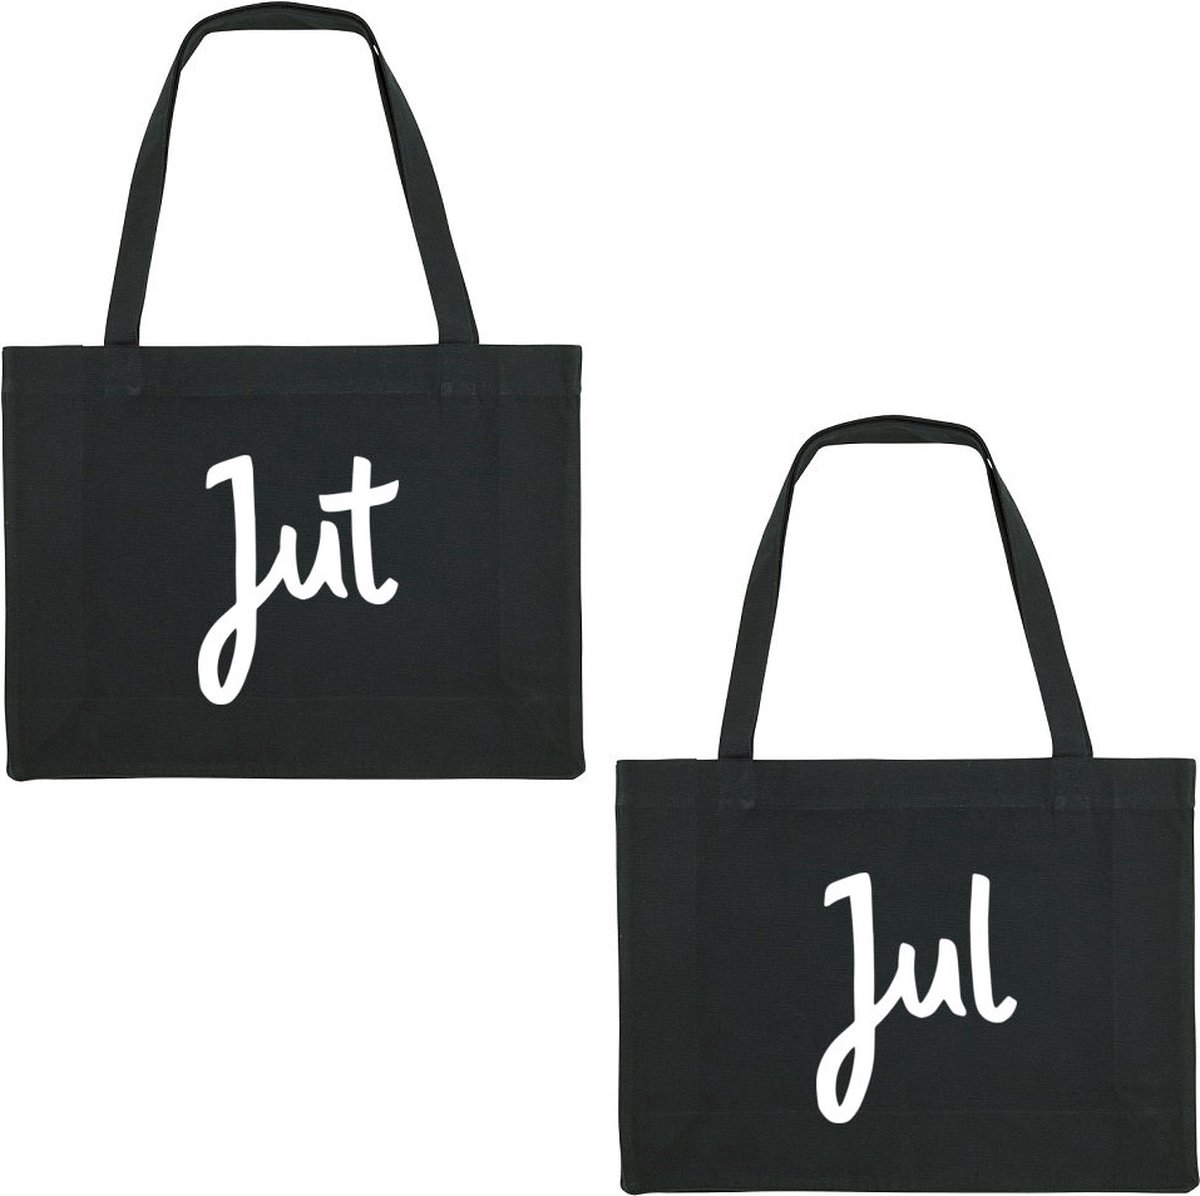 Jut & Jul duo pack Shopping Bag - shopping bag - shopping tas - tas - boodschappentas - cadeau - zwart - grappige tekst - bedrukt